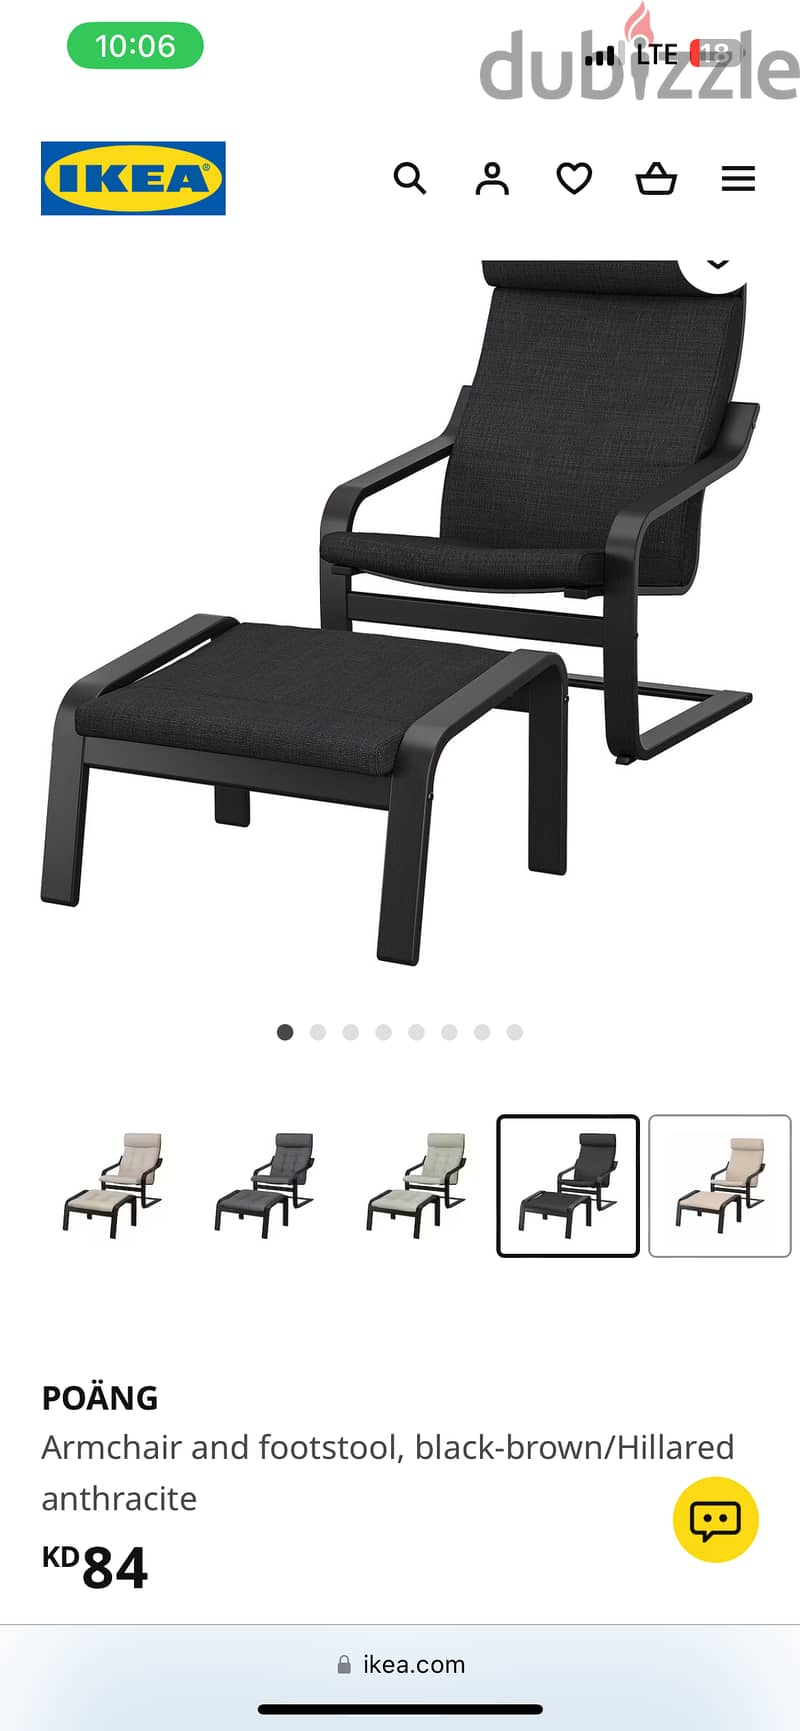 80KD IKEA Armchair & Footstool for 35KD 3